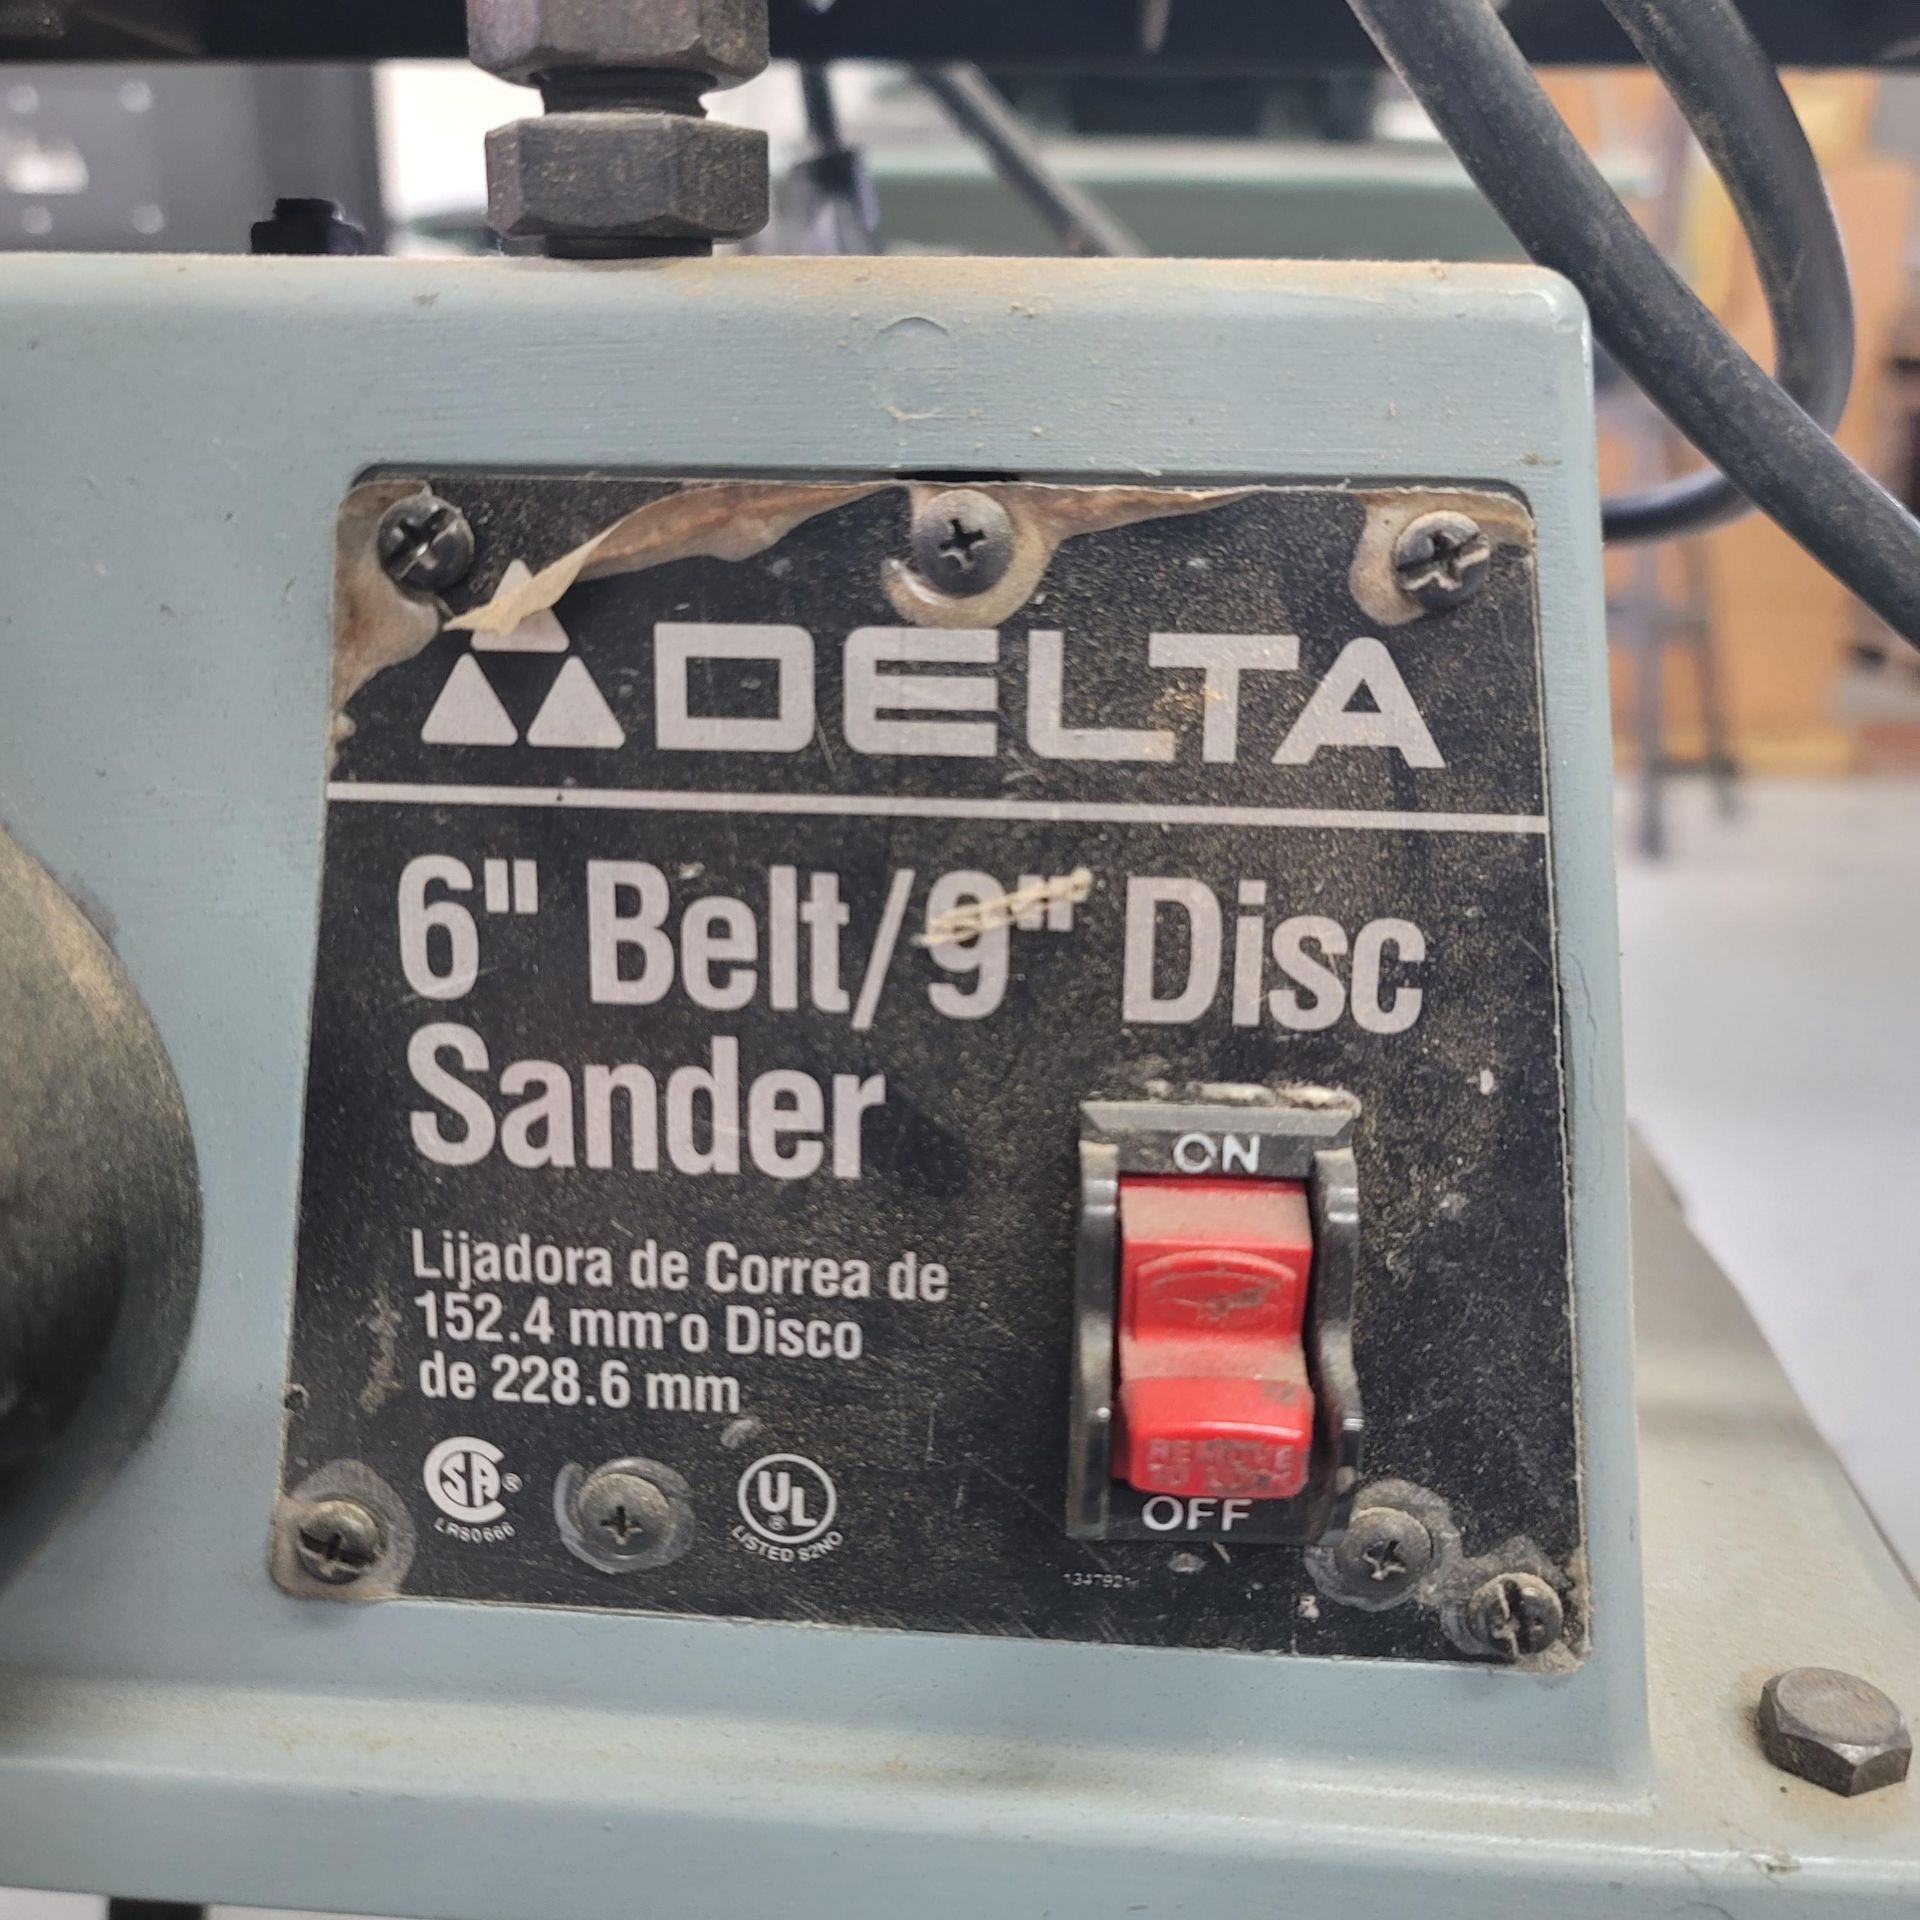 DELTA 6" BELT/9" DISC SANDER COMBO, MODEL 31-695, S/N P9804 - Image 3 of 3